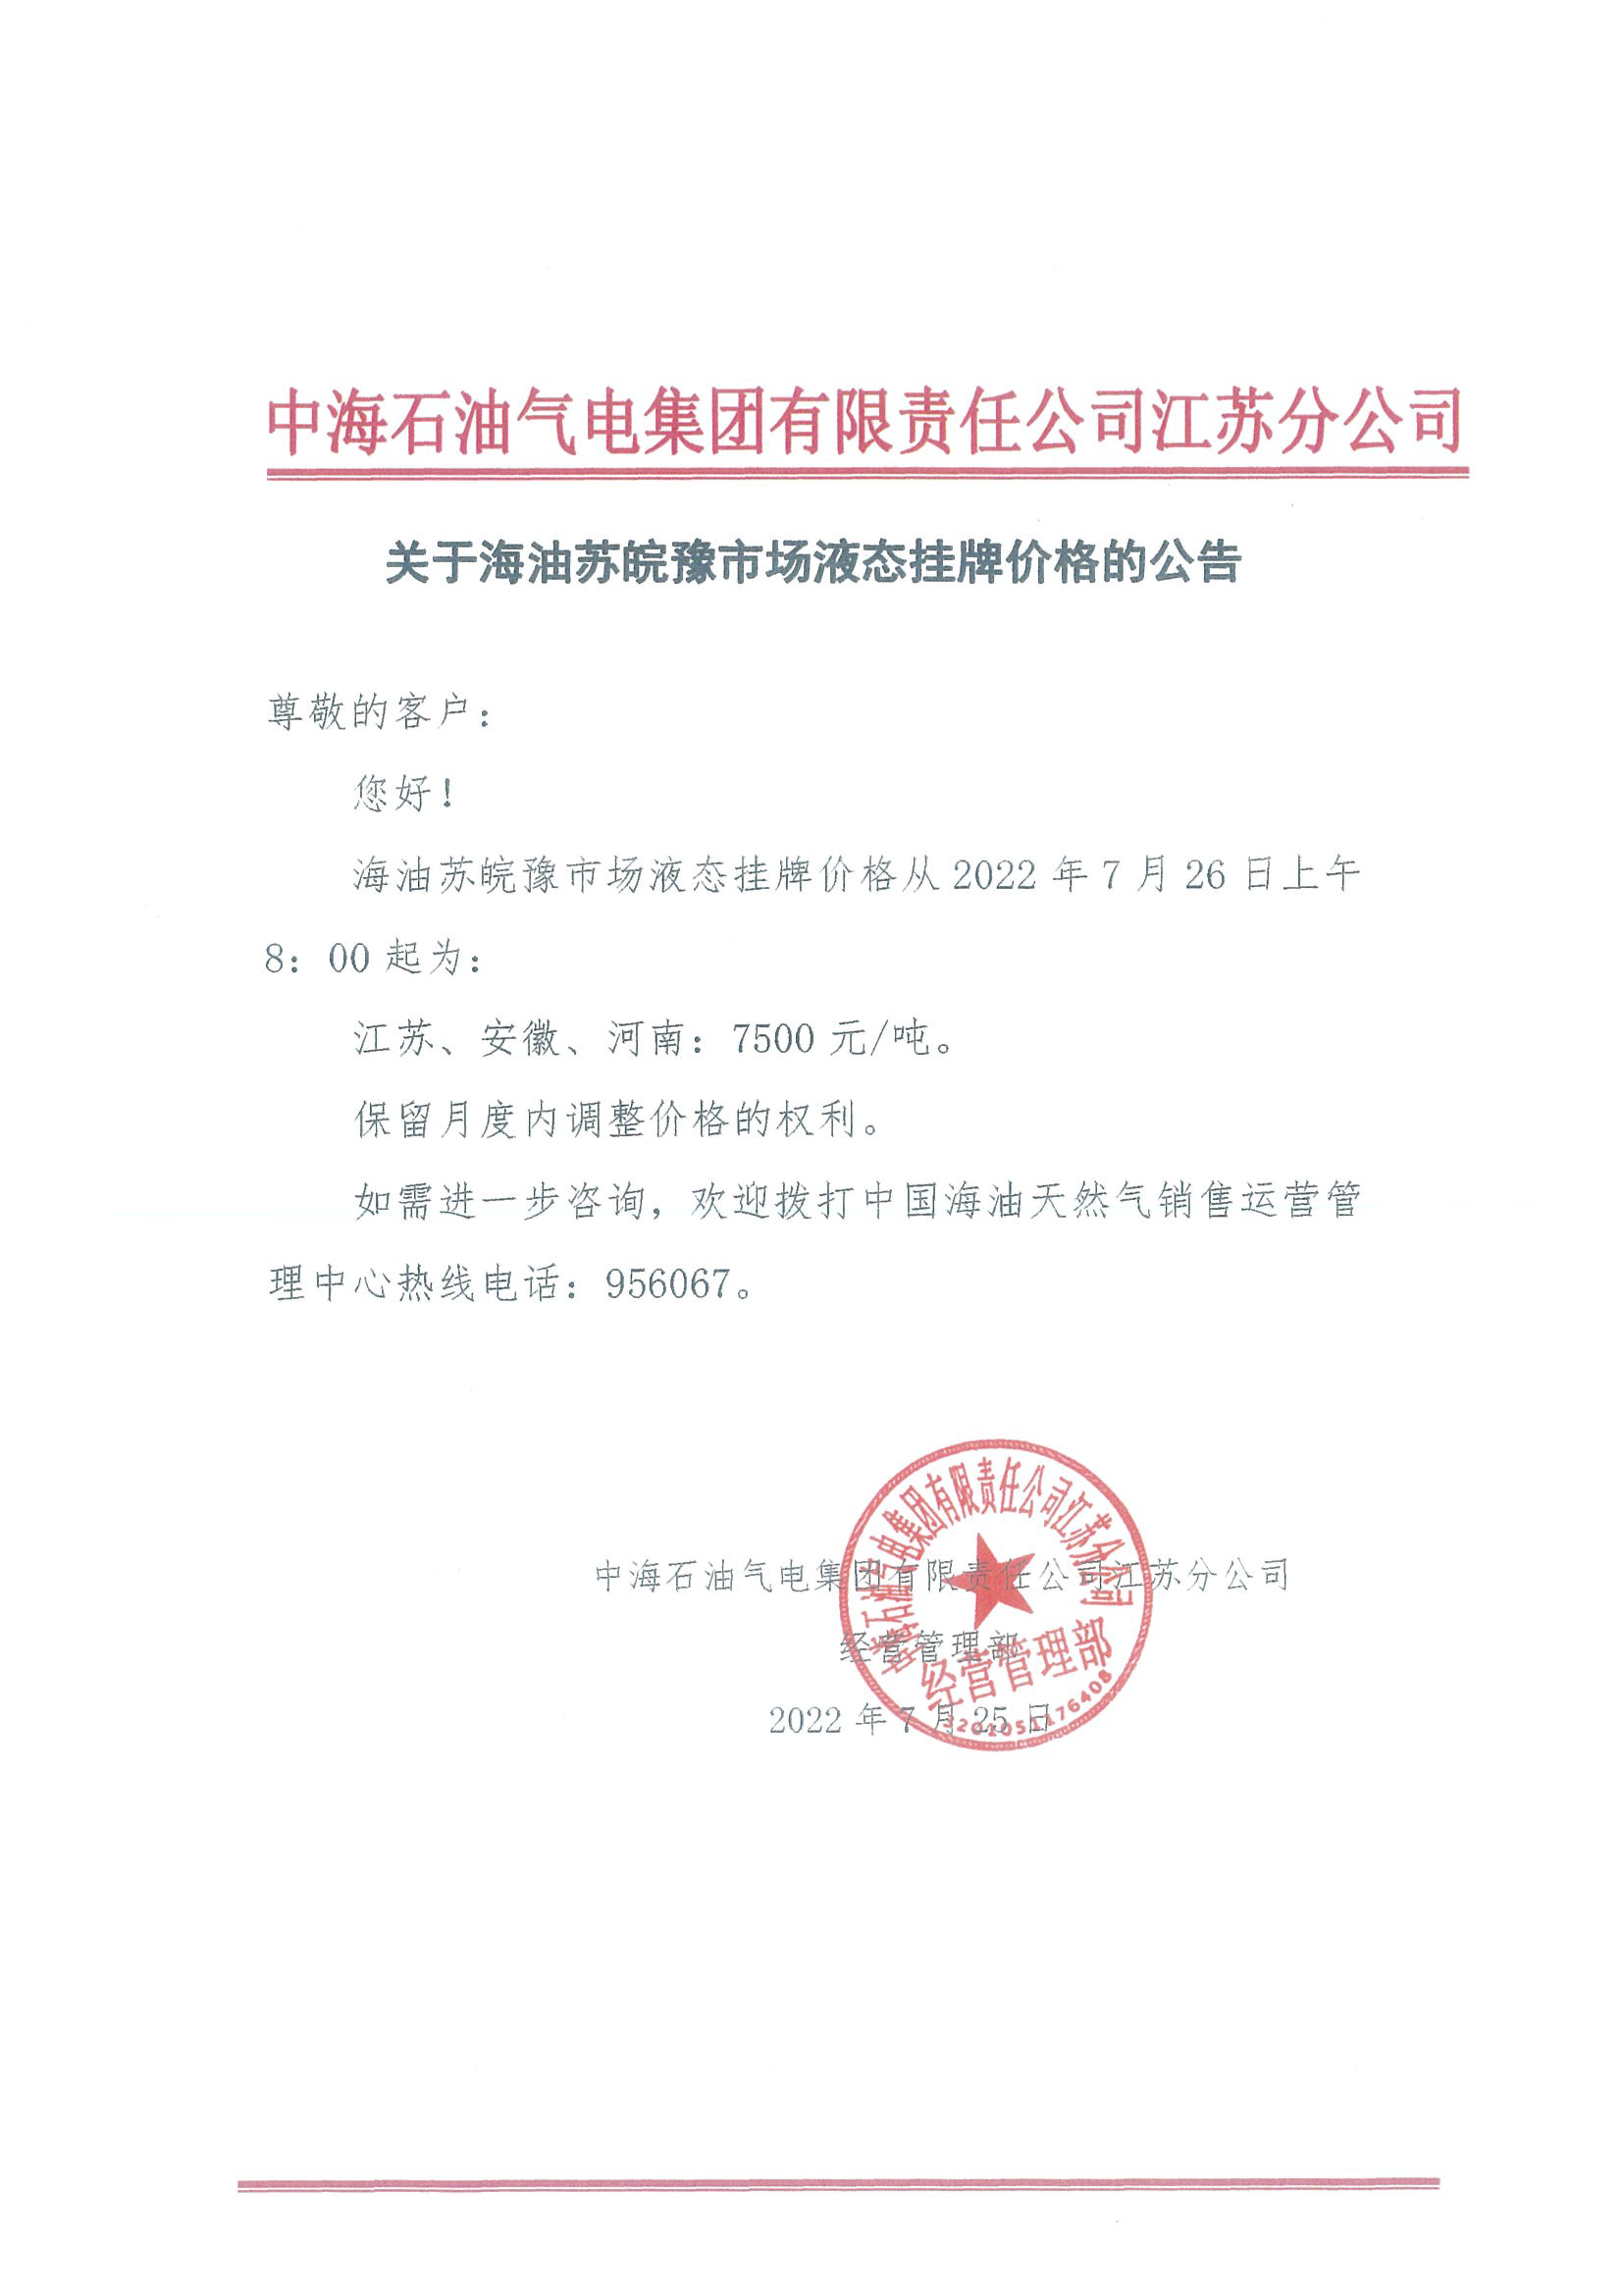 中海油江苏分公司关于7月26日华东苏皖市场价格调整公告.png